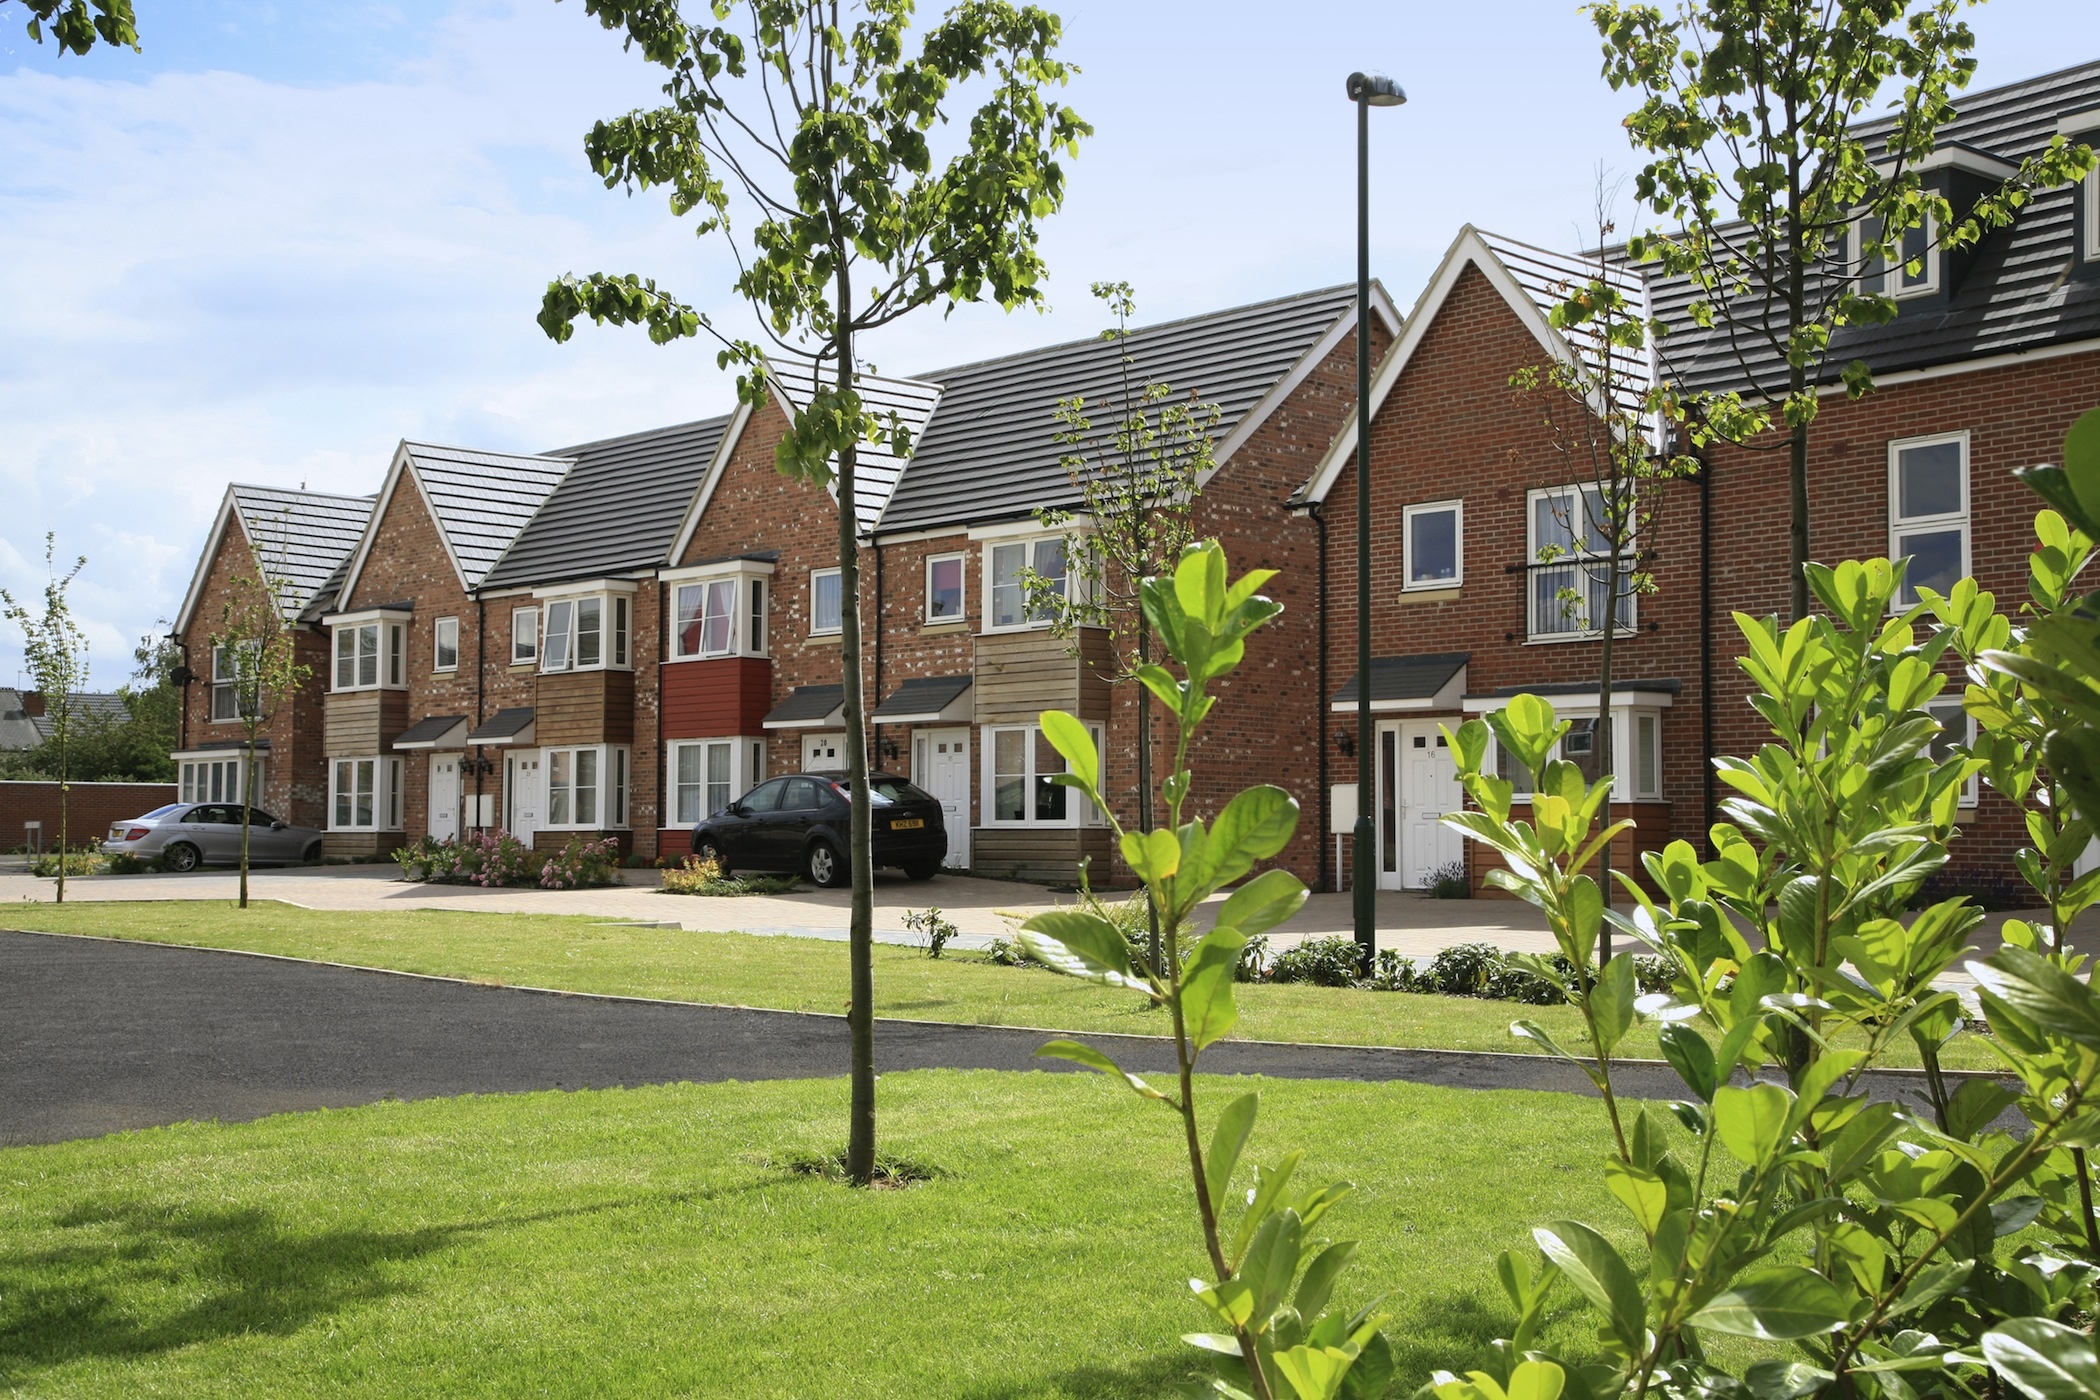 UK new build Property Market | RealEstateMarket